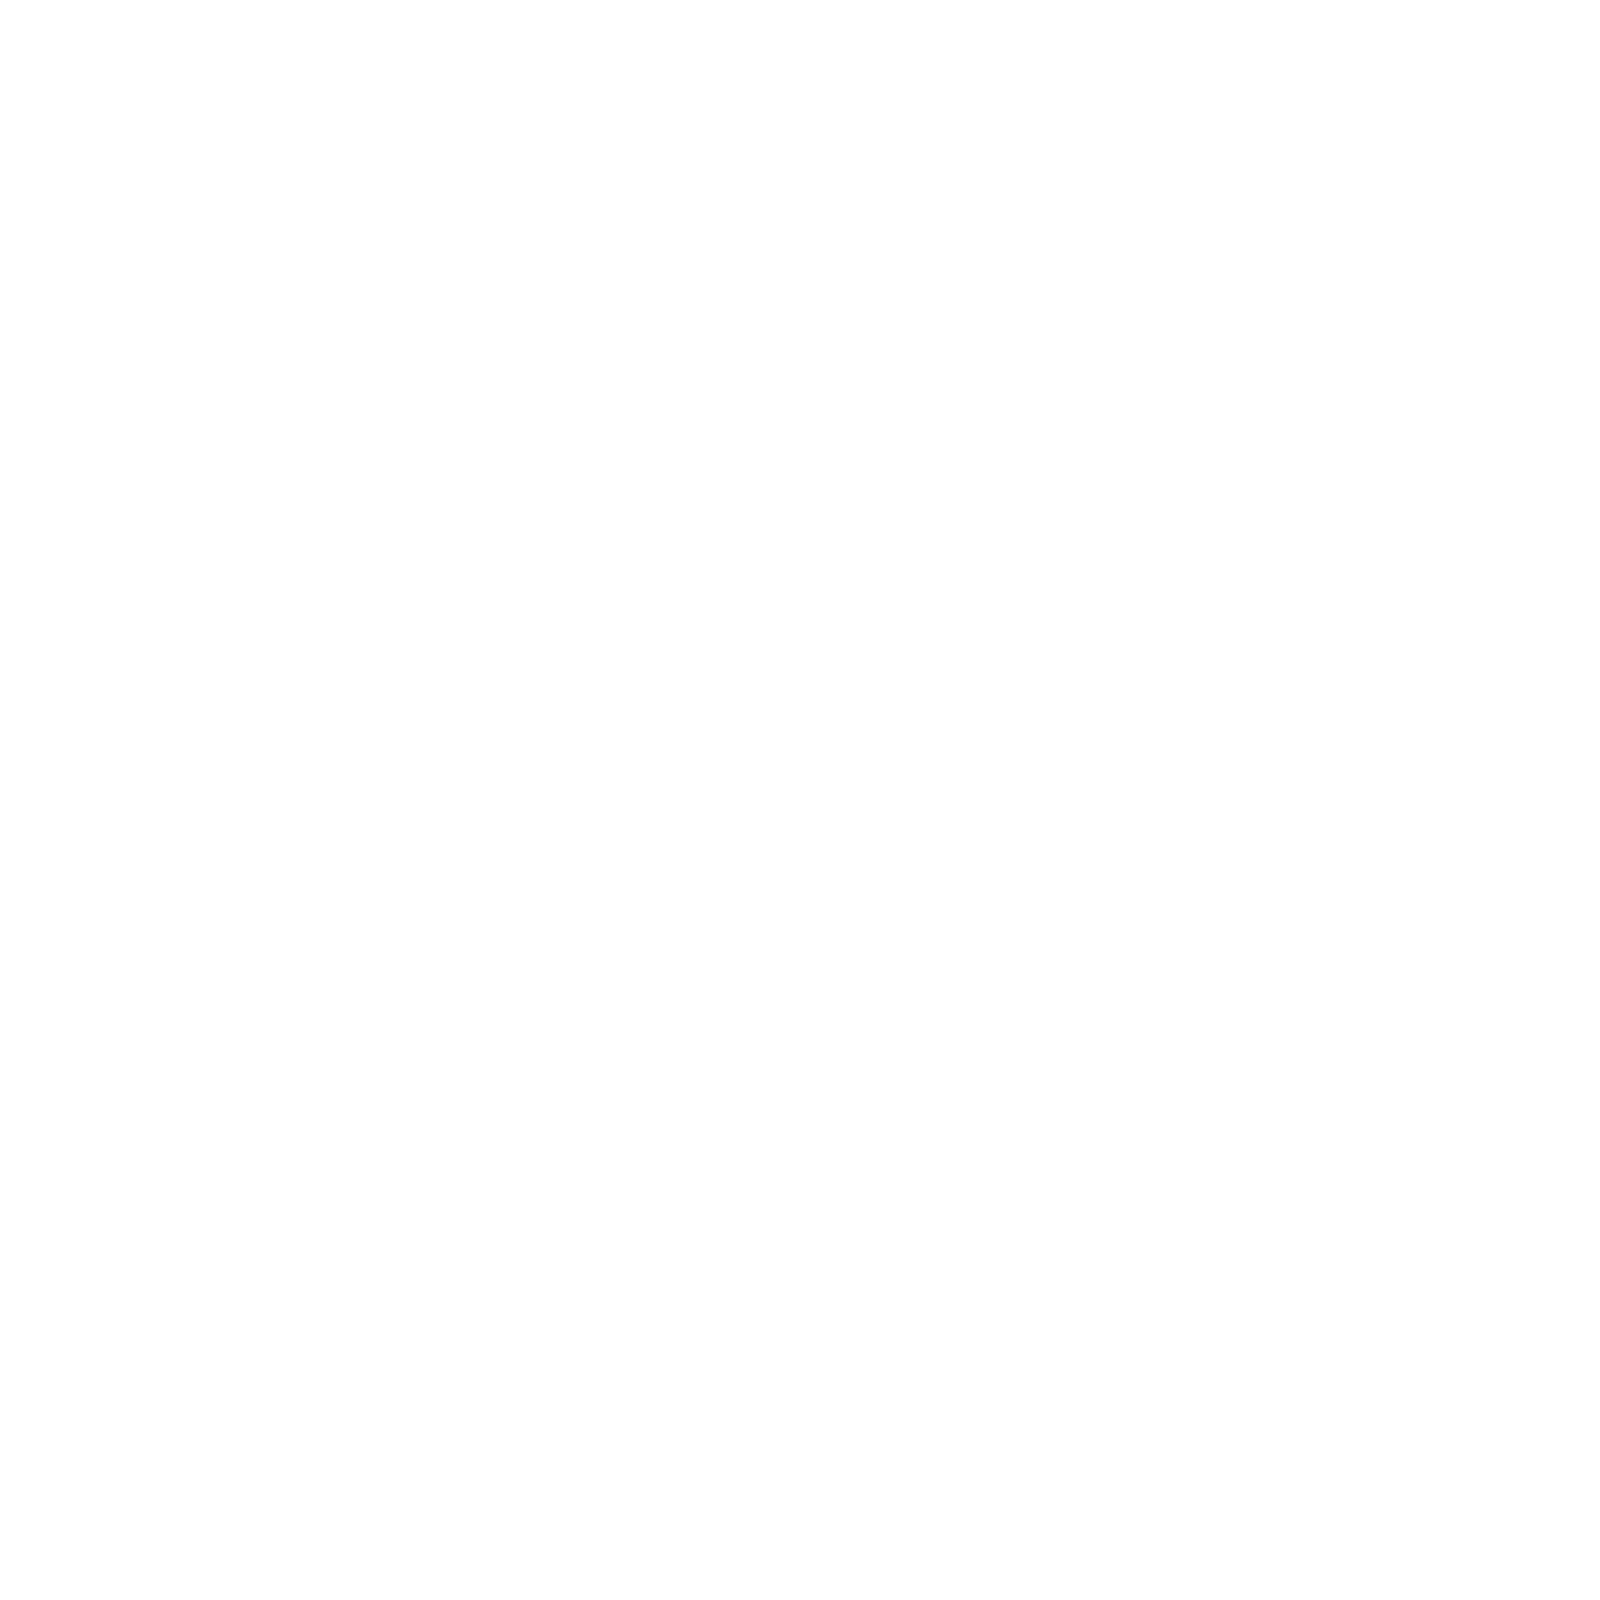 White Barn Wordmark